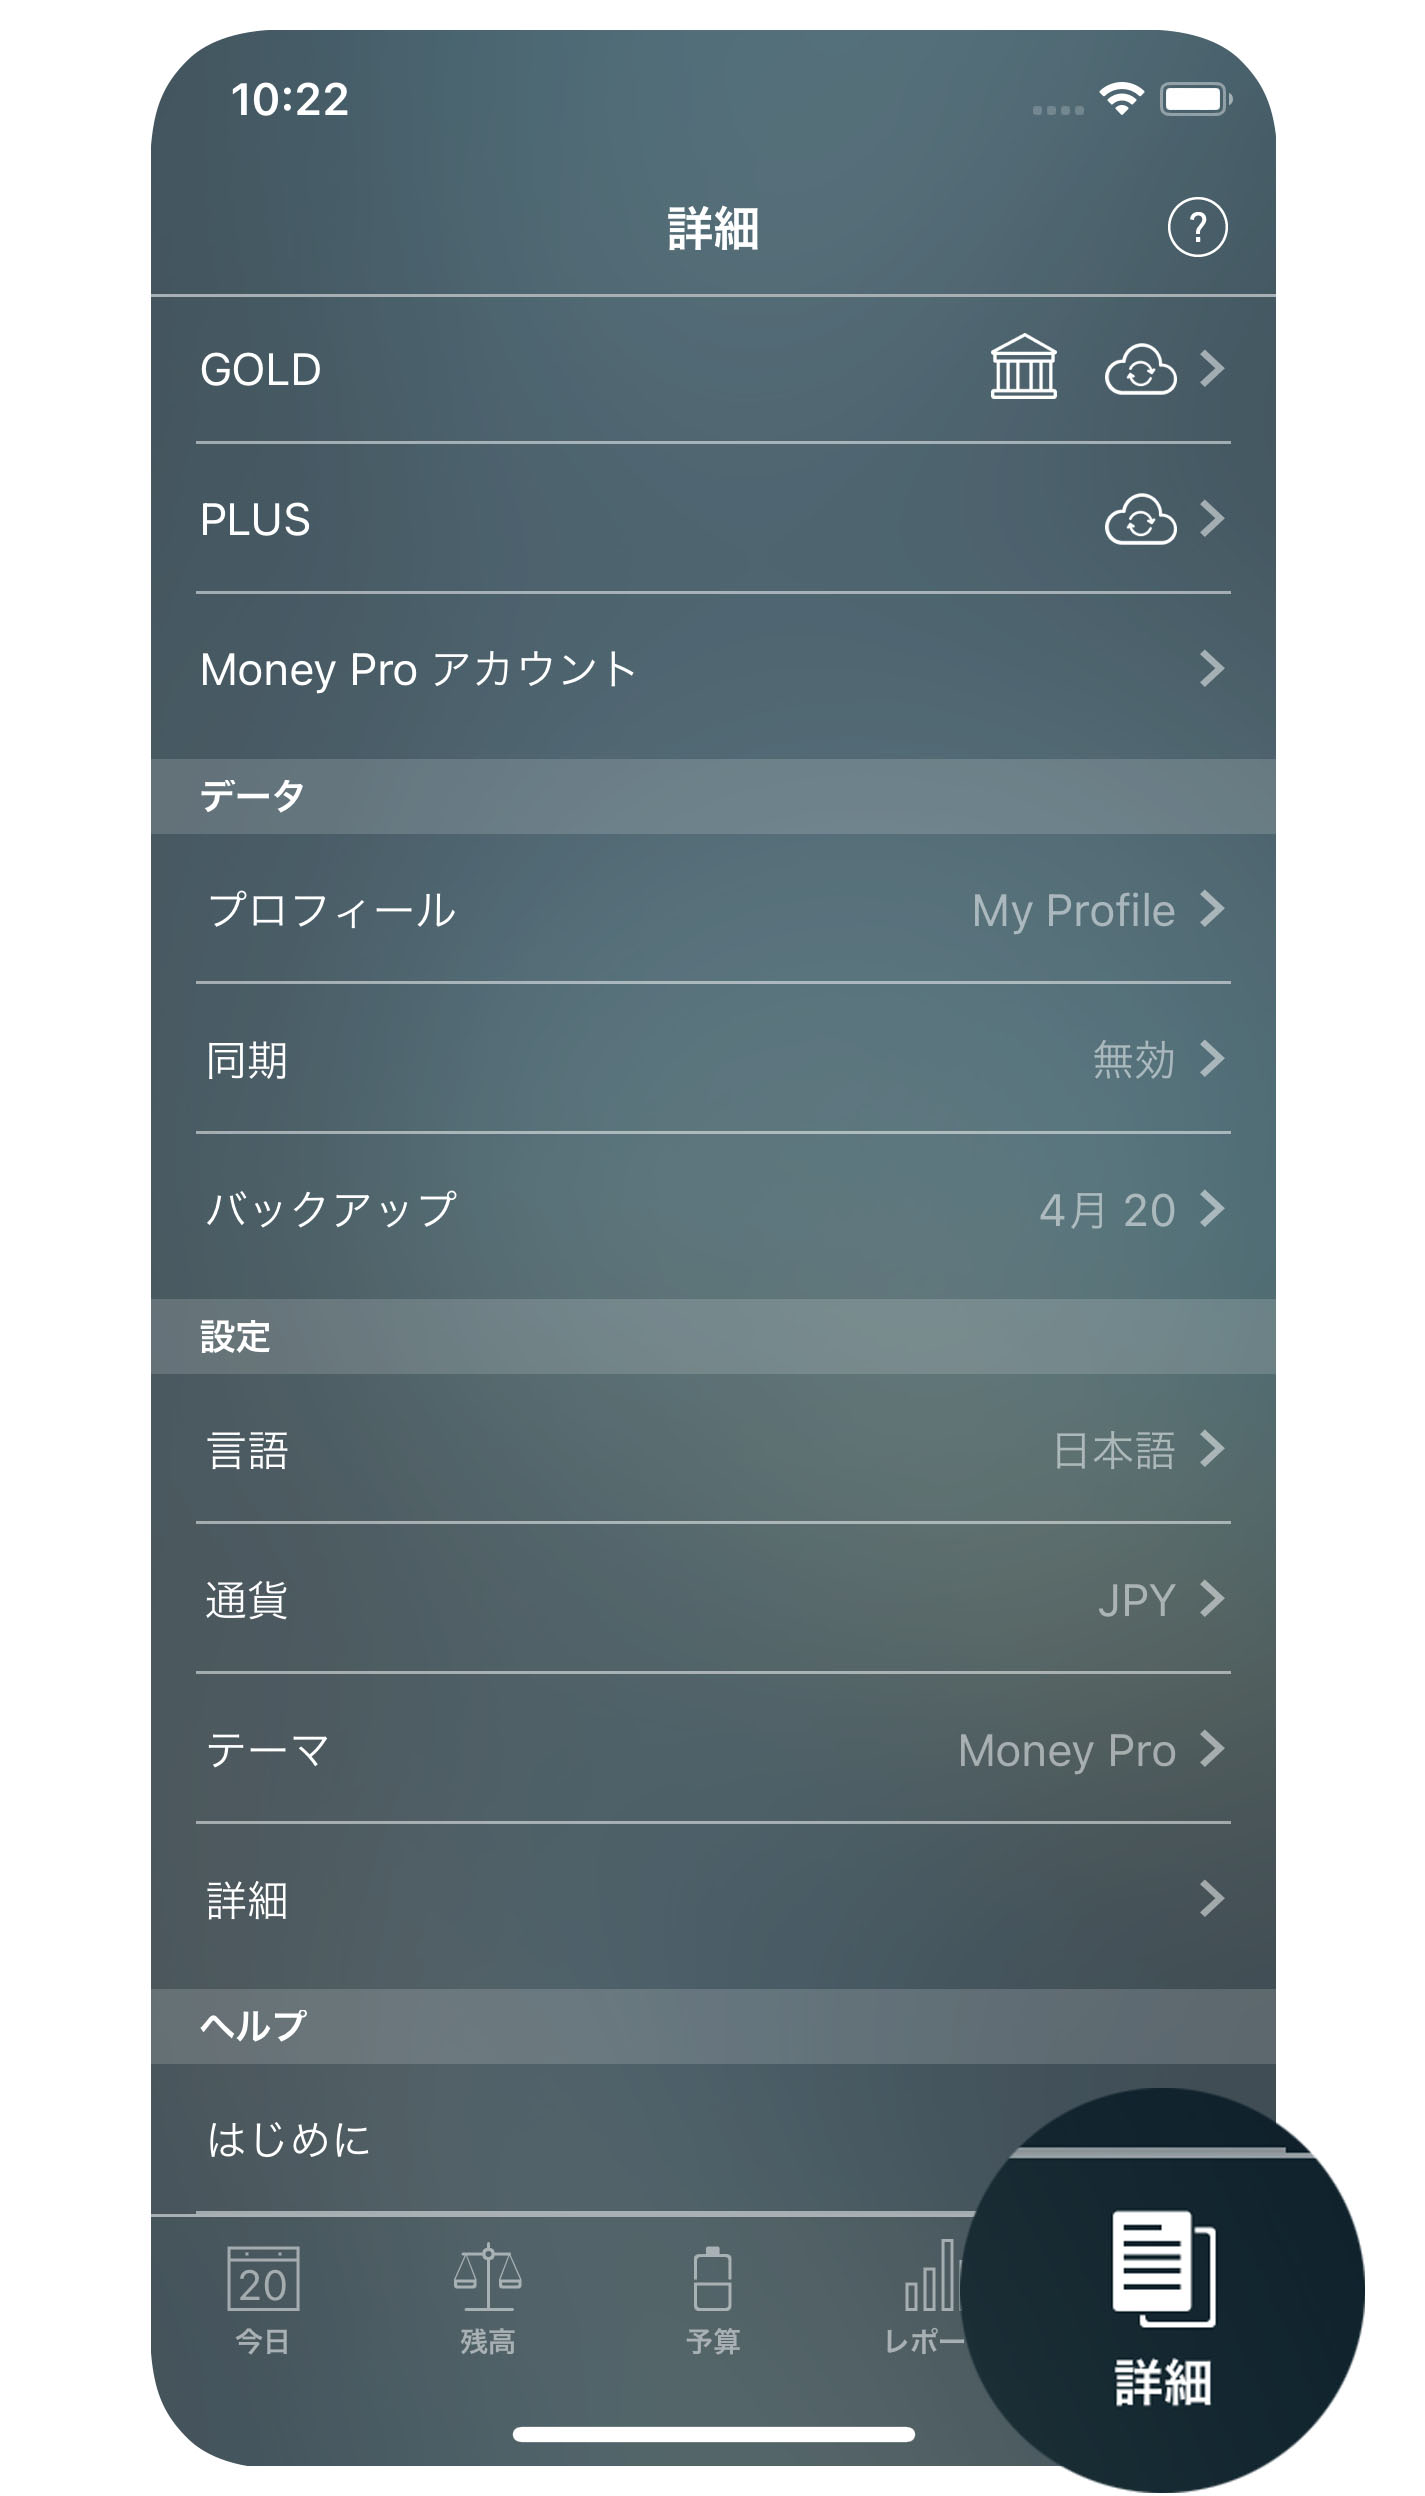 Money Pro - その他 (バックアップ、プロフィール、同期) - iPhone